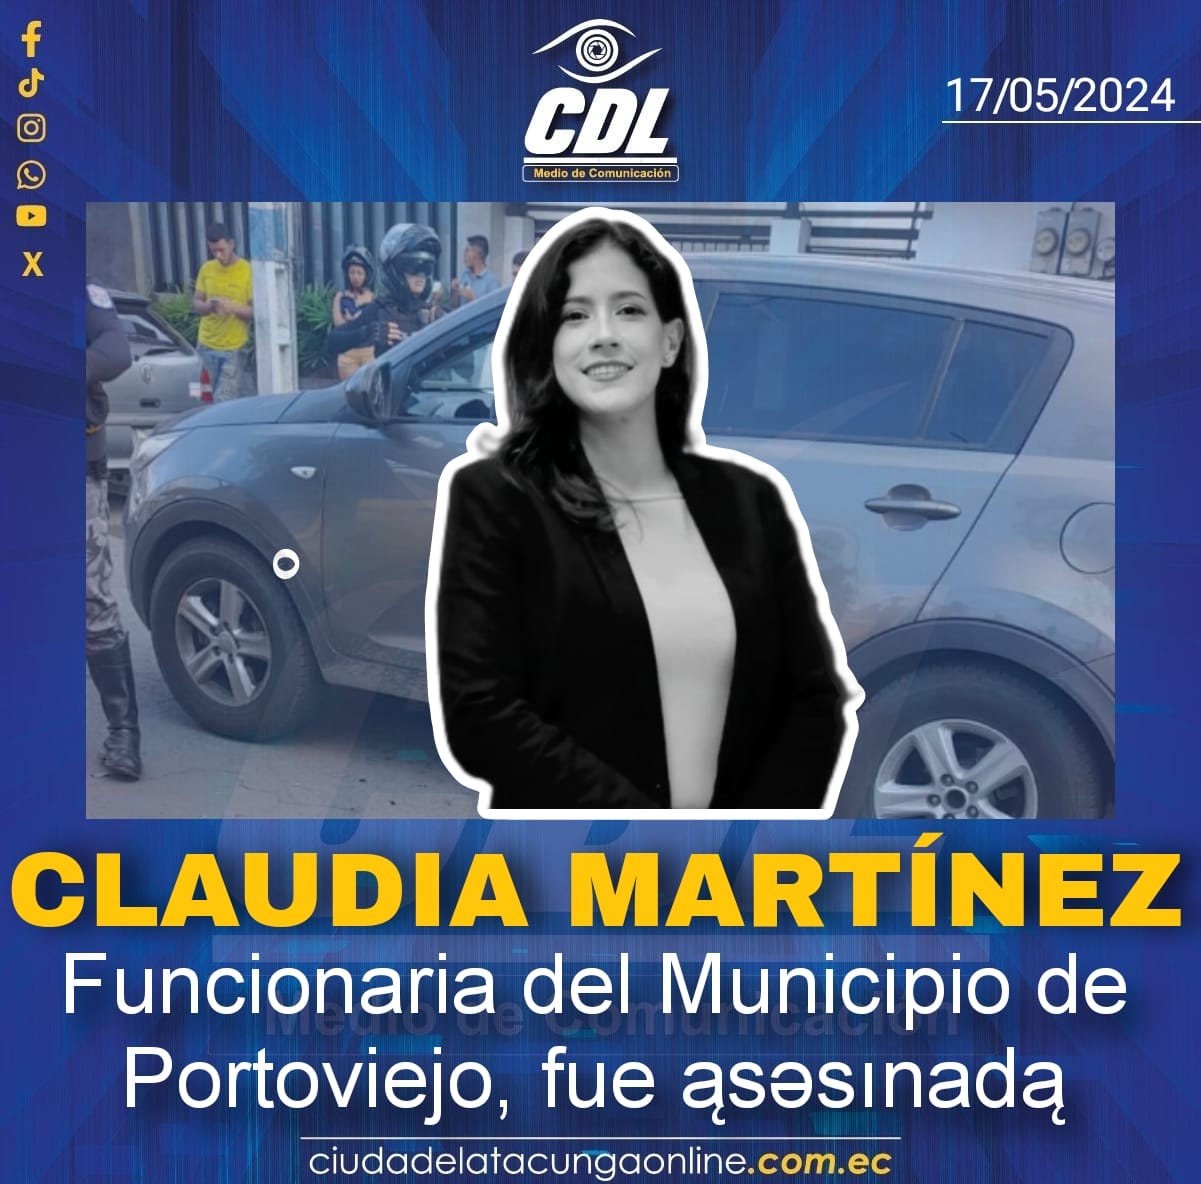 Claudia Martínez, Funcionaria del Municipio de Portoviejo, fue ąsəsınadą